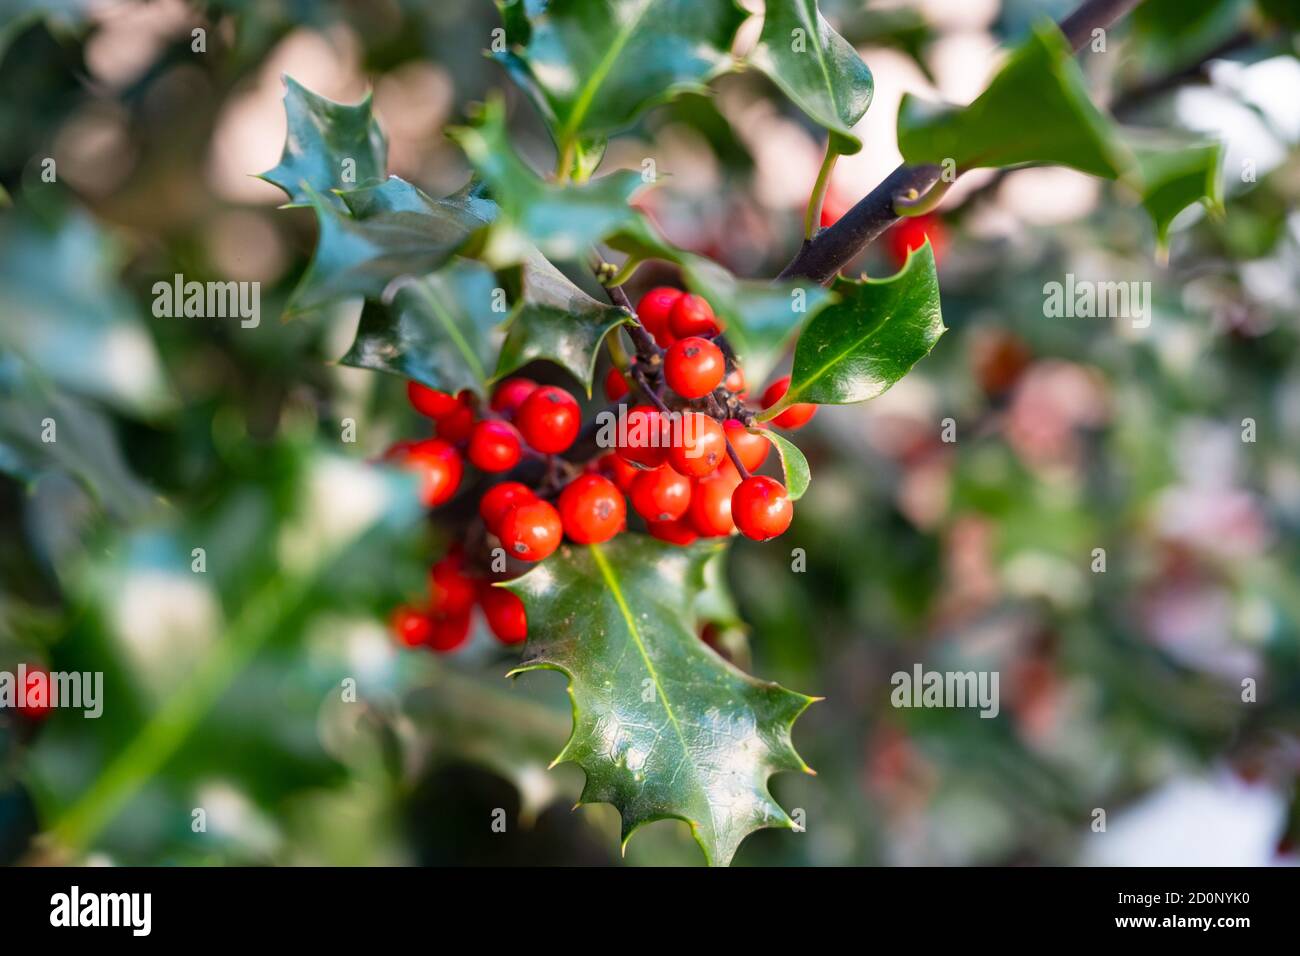 Photo de la buisson verte de l'Holly européenne aux baies rouges et des feuilles épineuses Banque D'Images